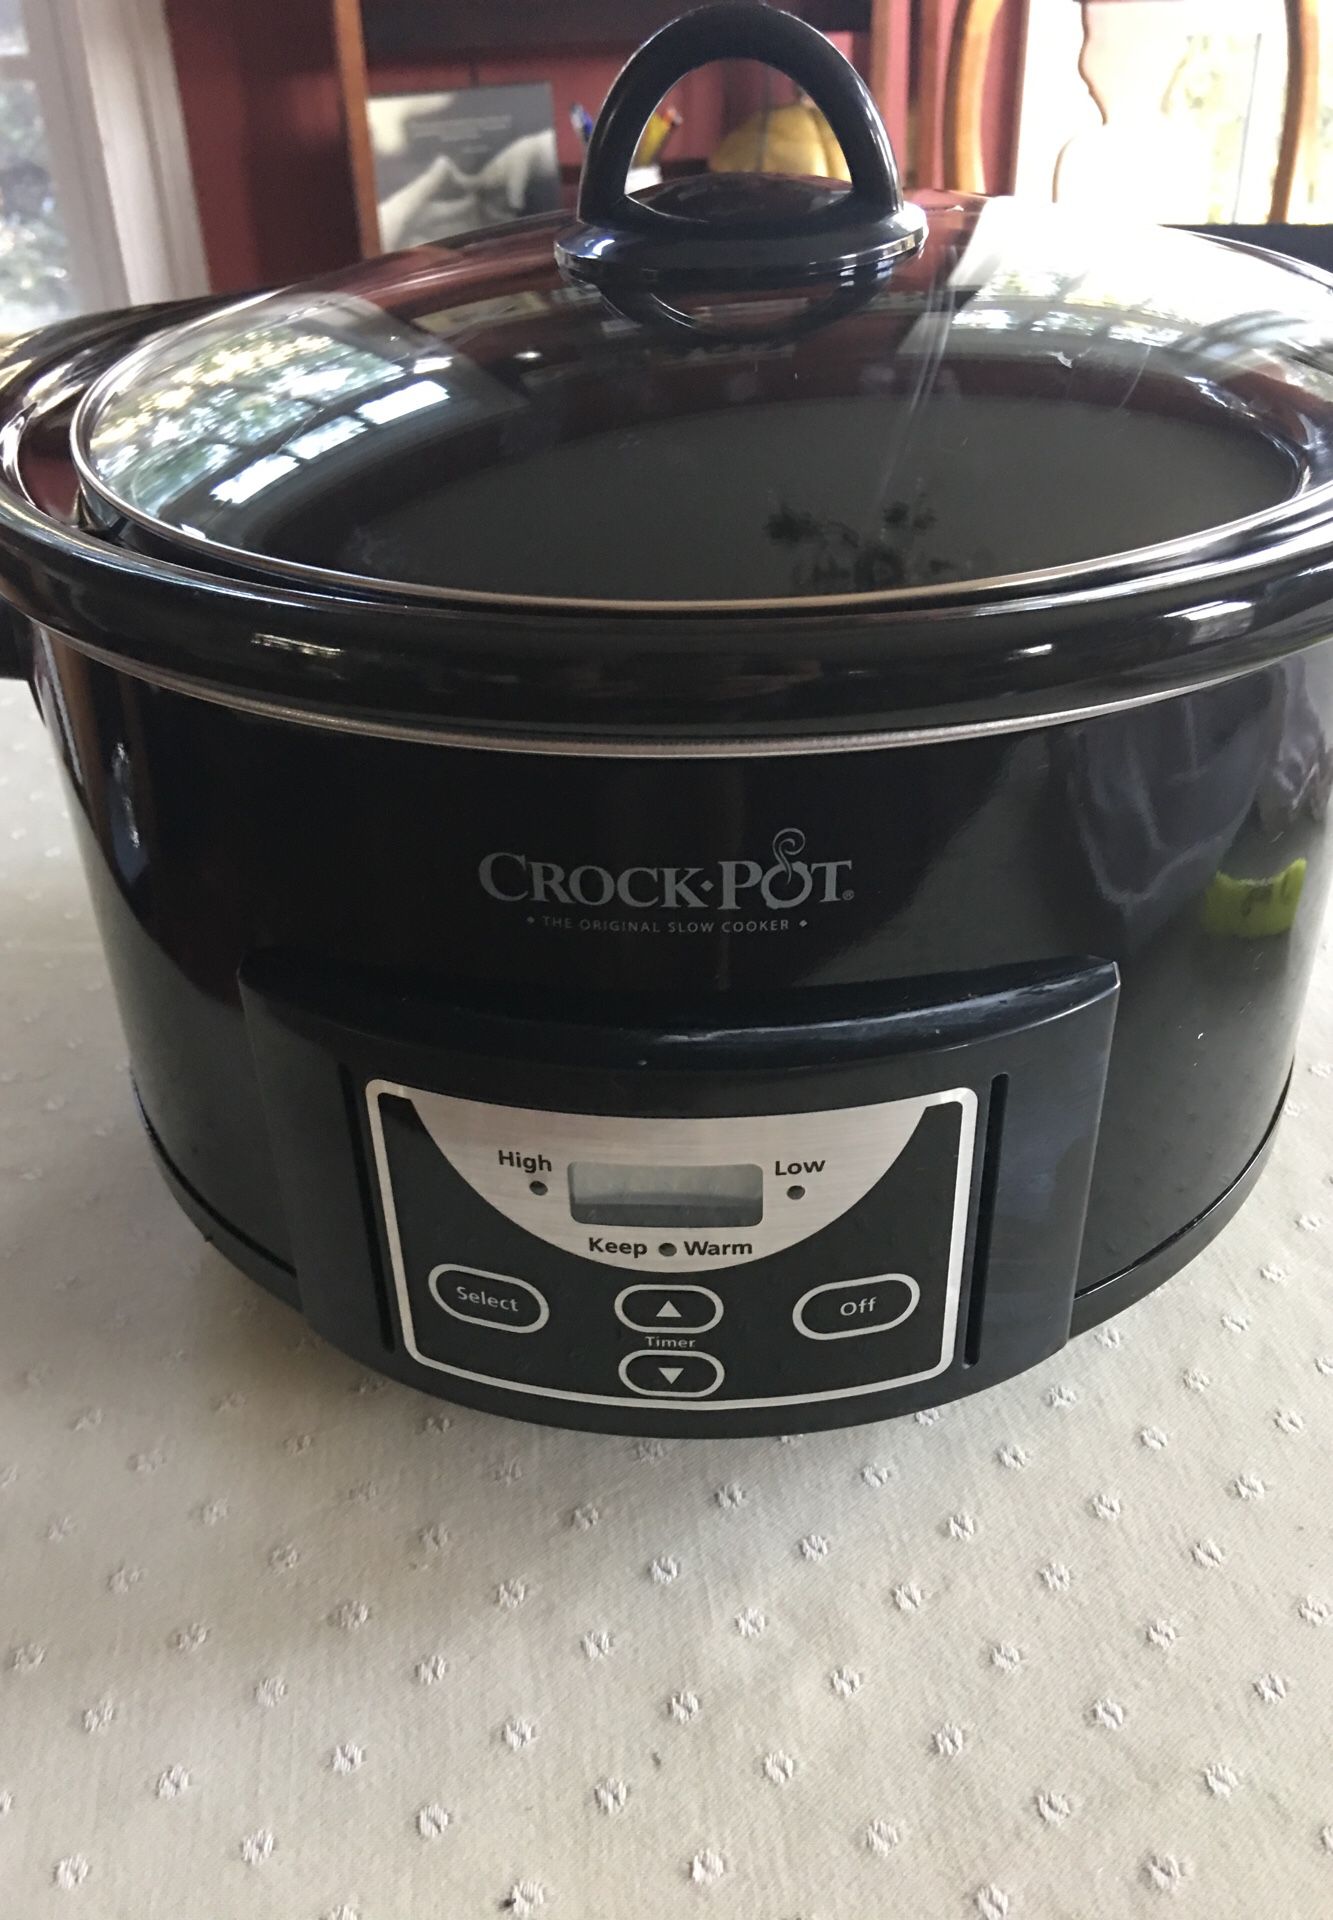 Crock pot SCCPRC597-B 5 quart Slow Cooker